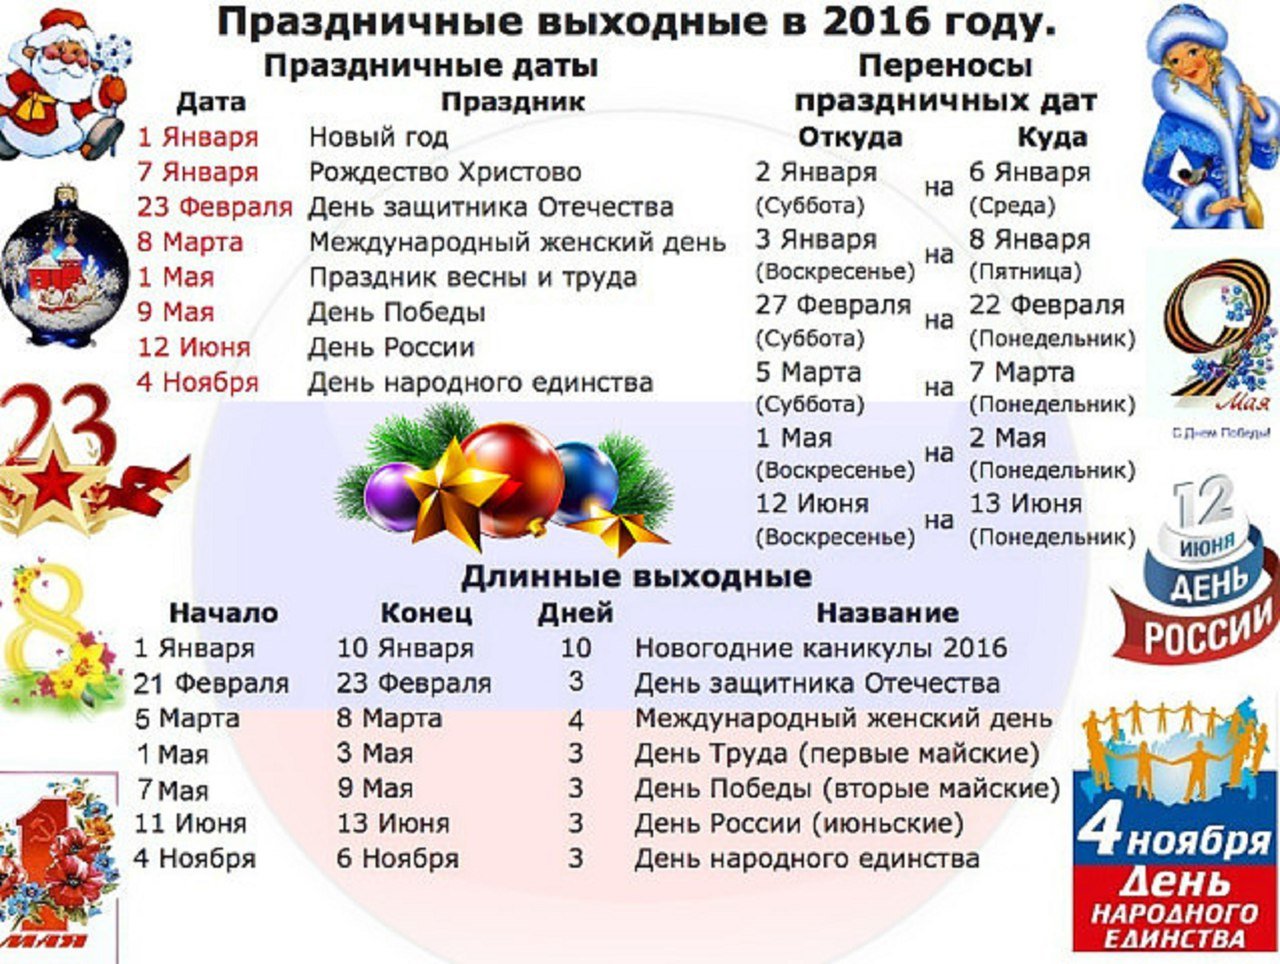 20 апреля 20 года какой праздник. Даты праздников. Название праздников. Праздники России список. Праздники названия праздников.